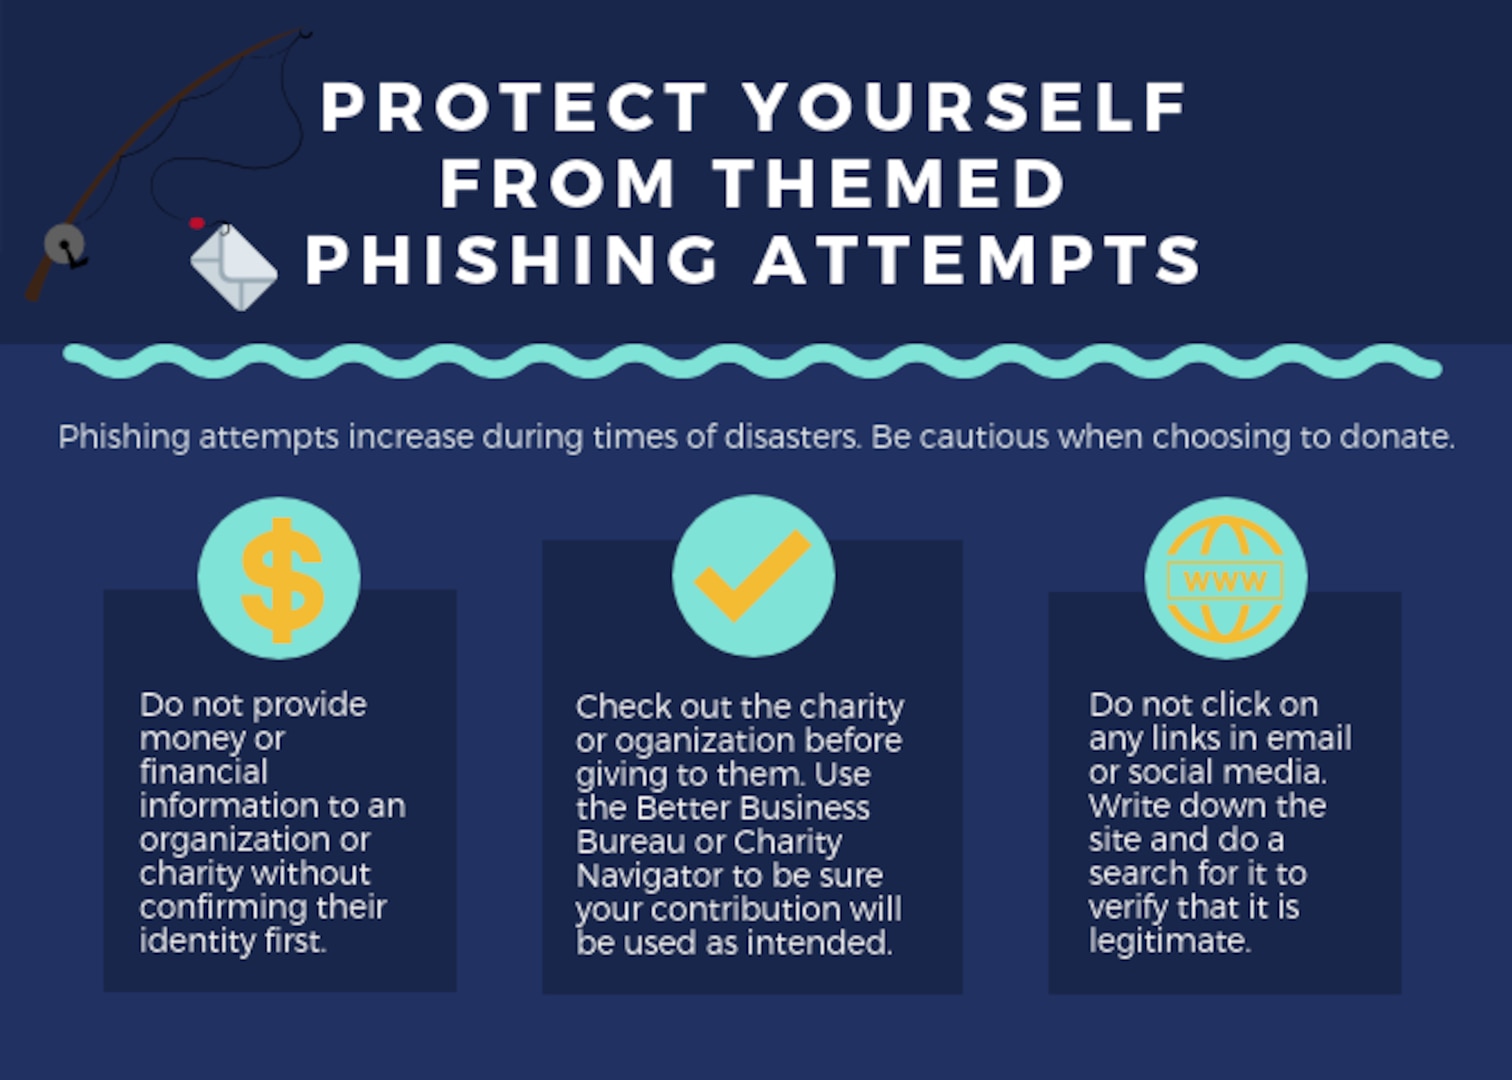 Three steps to avoid phishing